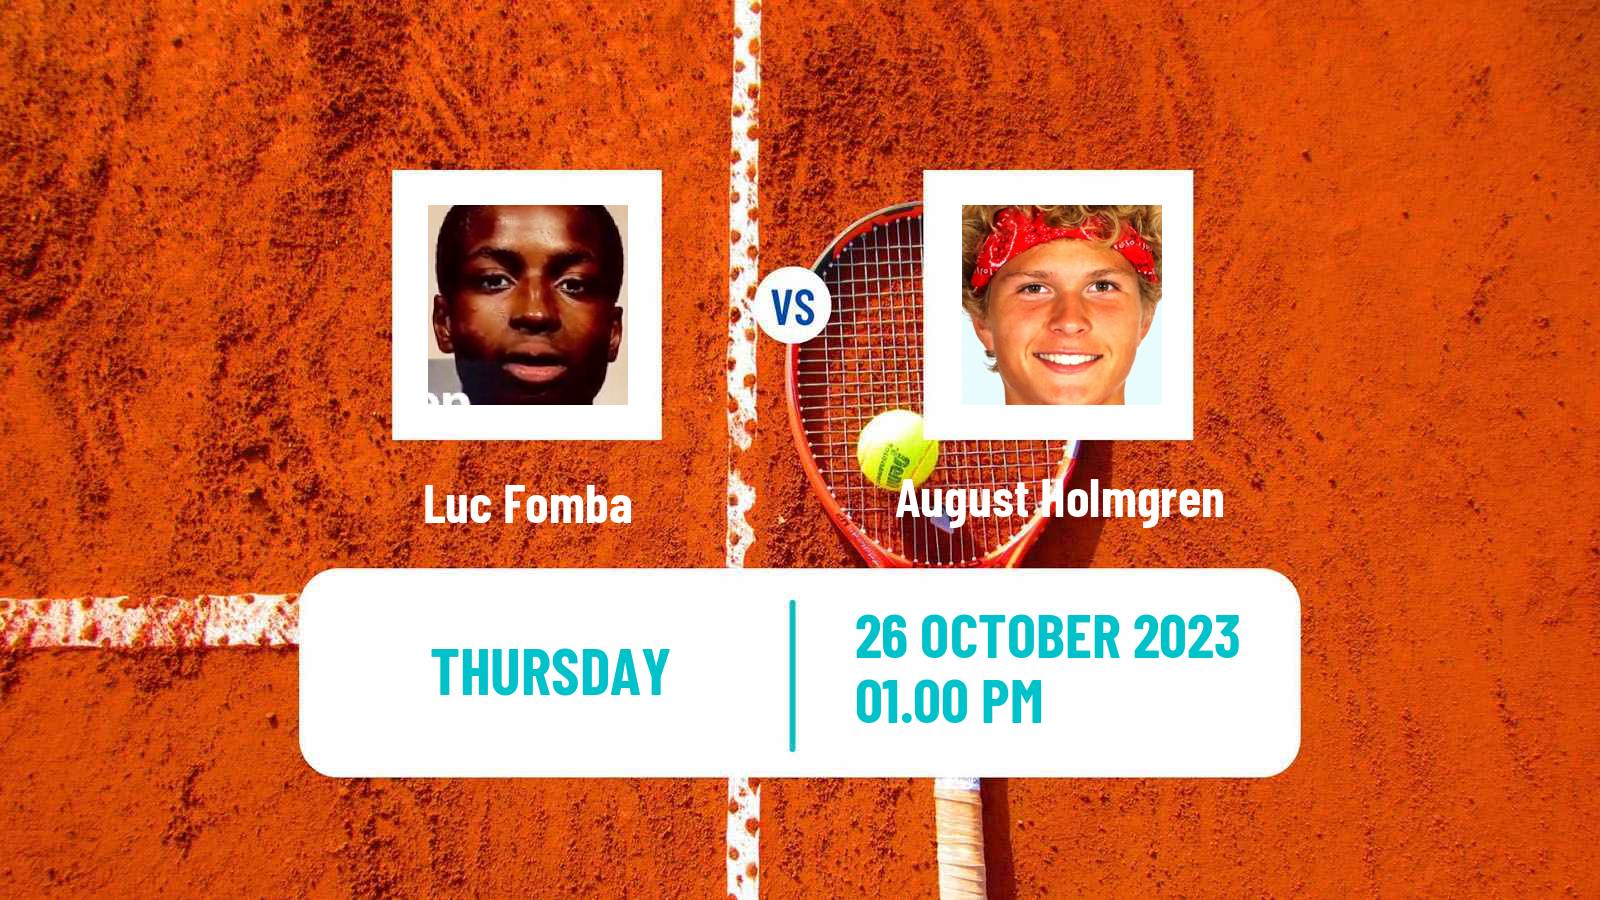 Tennis ITF M25 Harlingen Tx Men Luc Fomba - August Holmgren